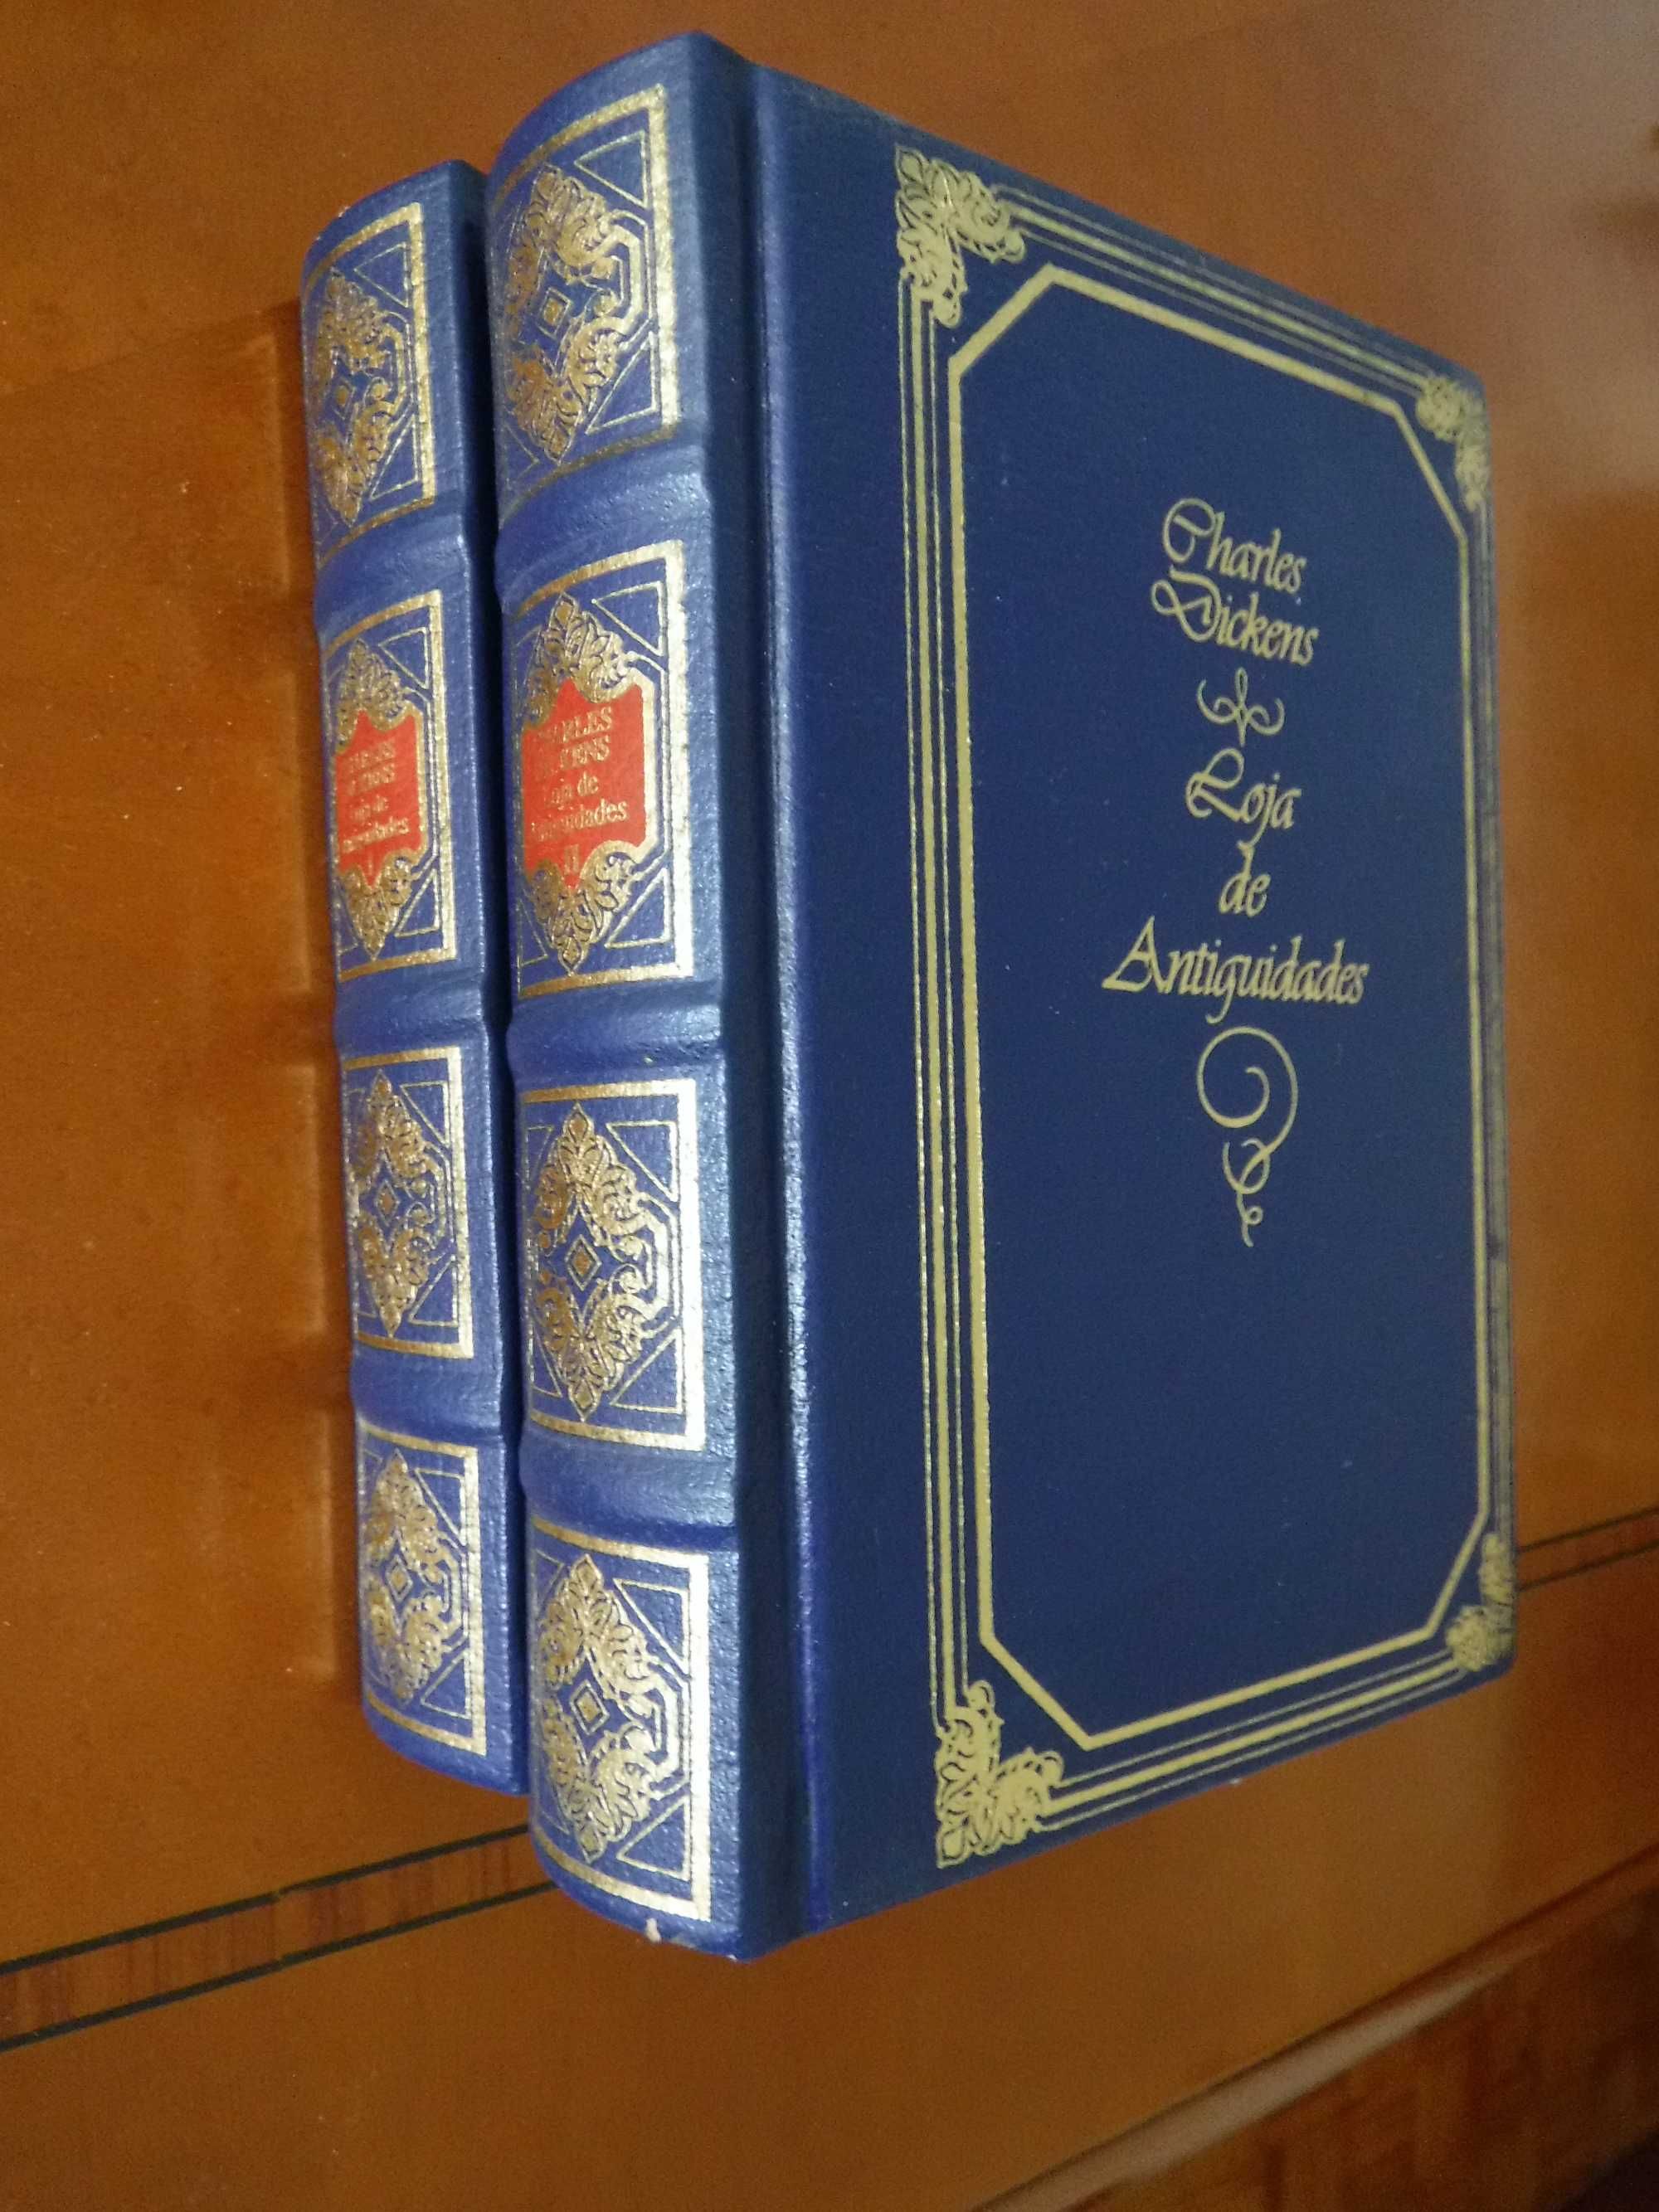 Loja de Antiguidades - Charles Dickens - 2 vols - Encadernação de luxo